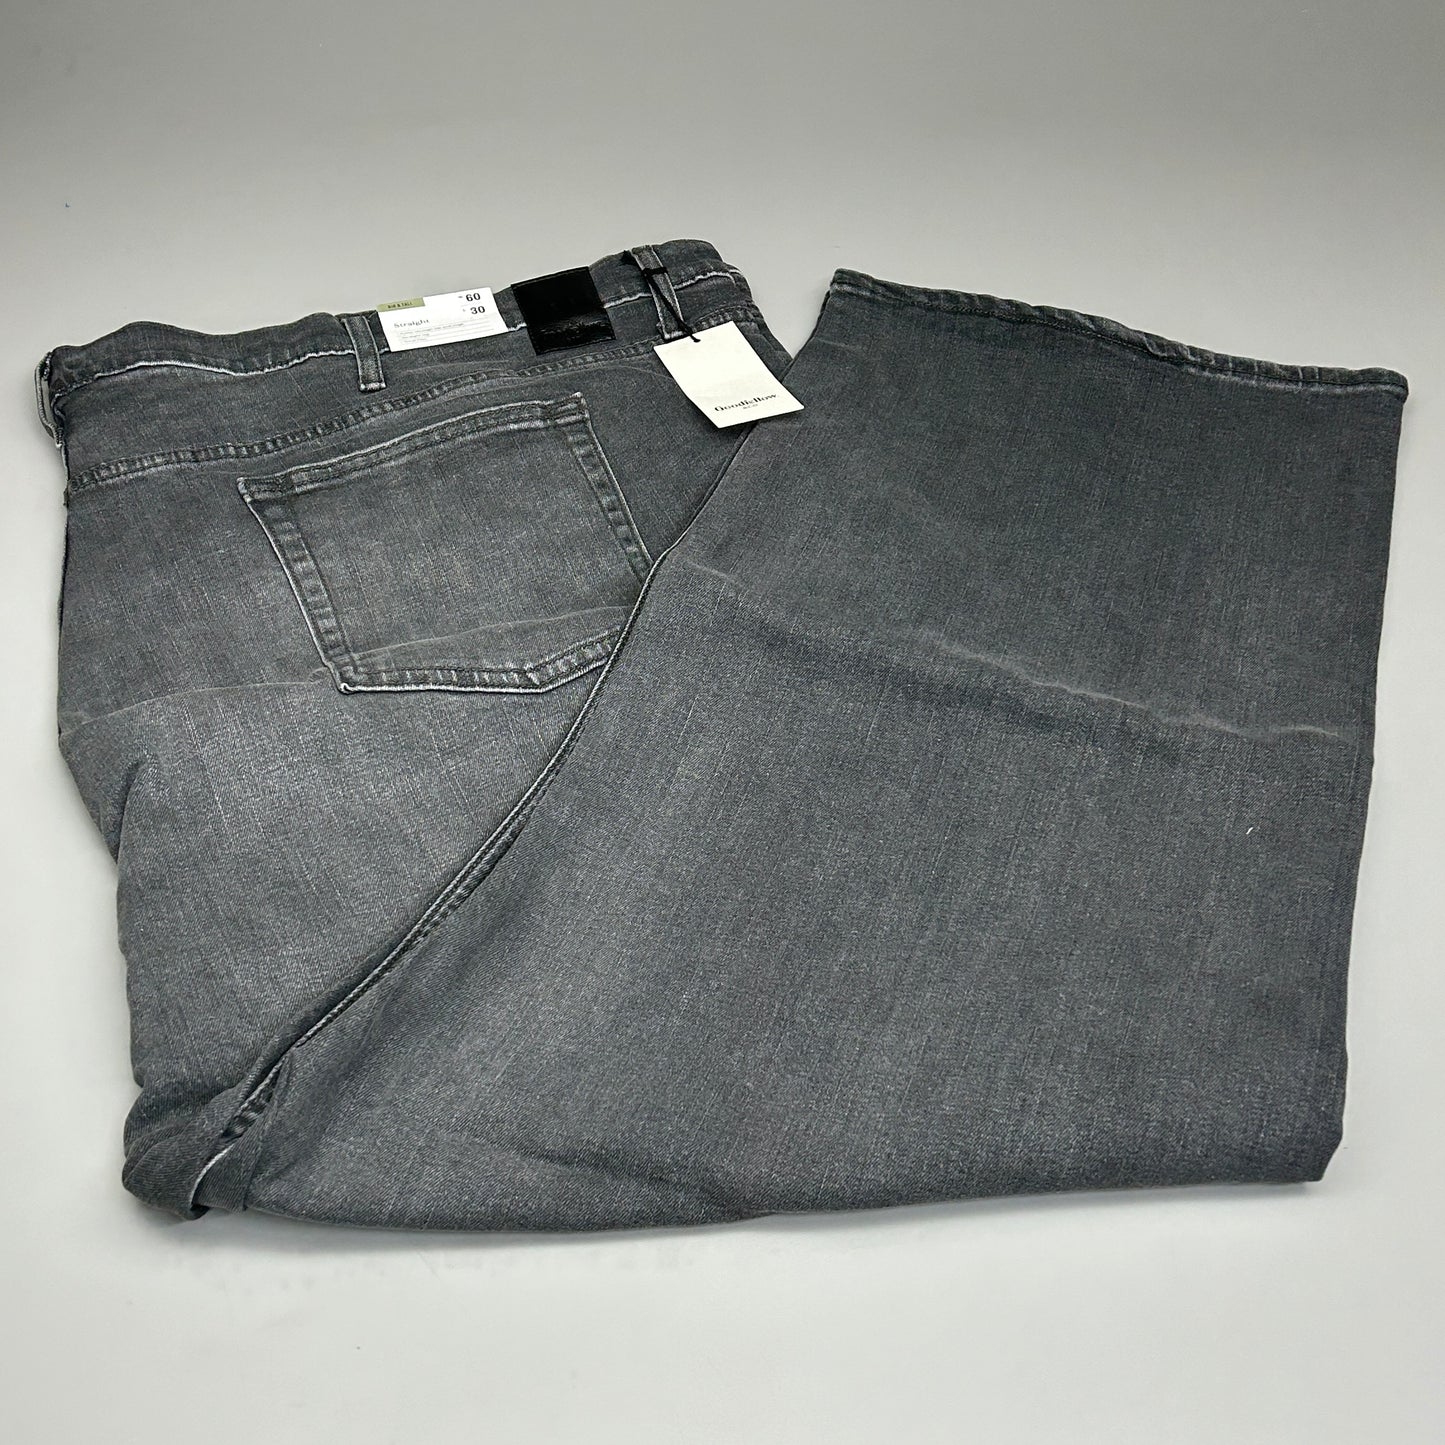 GOODFELLOW & CO Men's Big & Tall Straight Fit Jeans Black Denim Sz 60Wx30L (New)